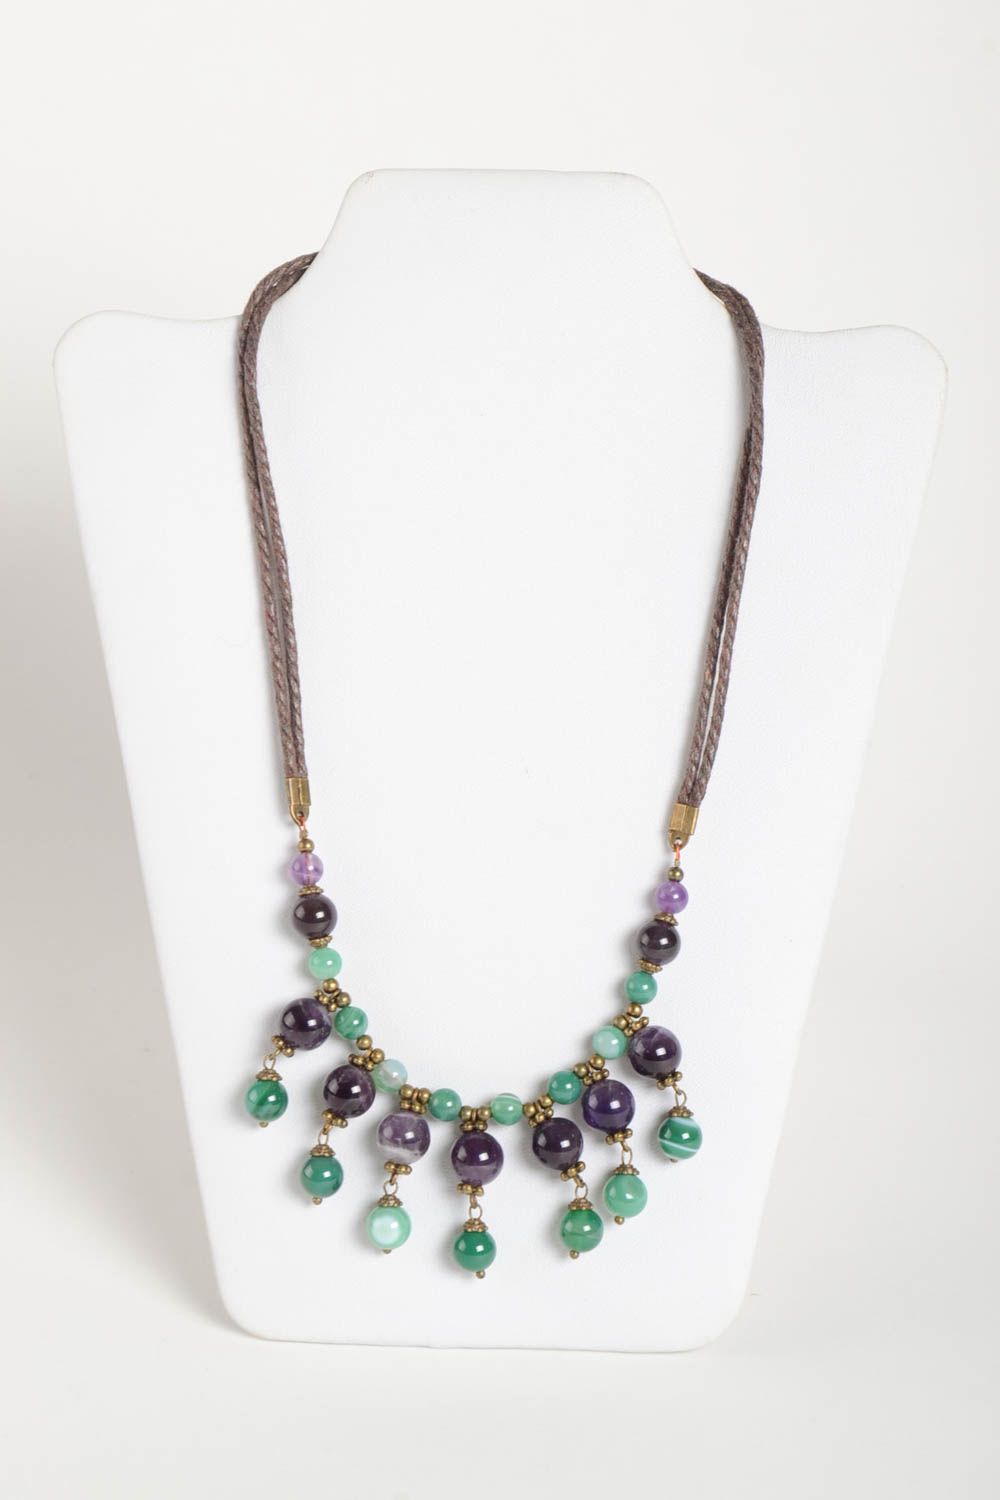 Handmade beaded elegant necklace stylish unusual jewelry natural stone necklace photo 2